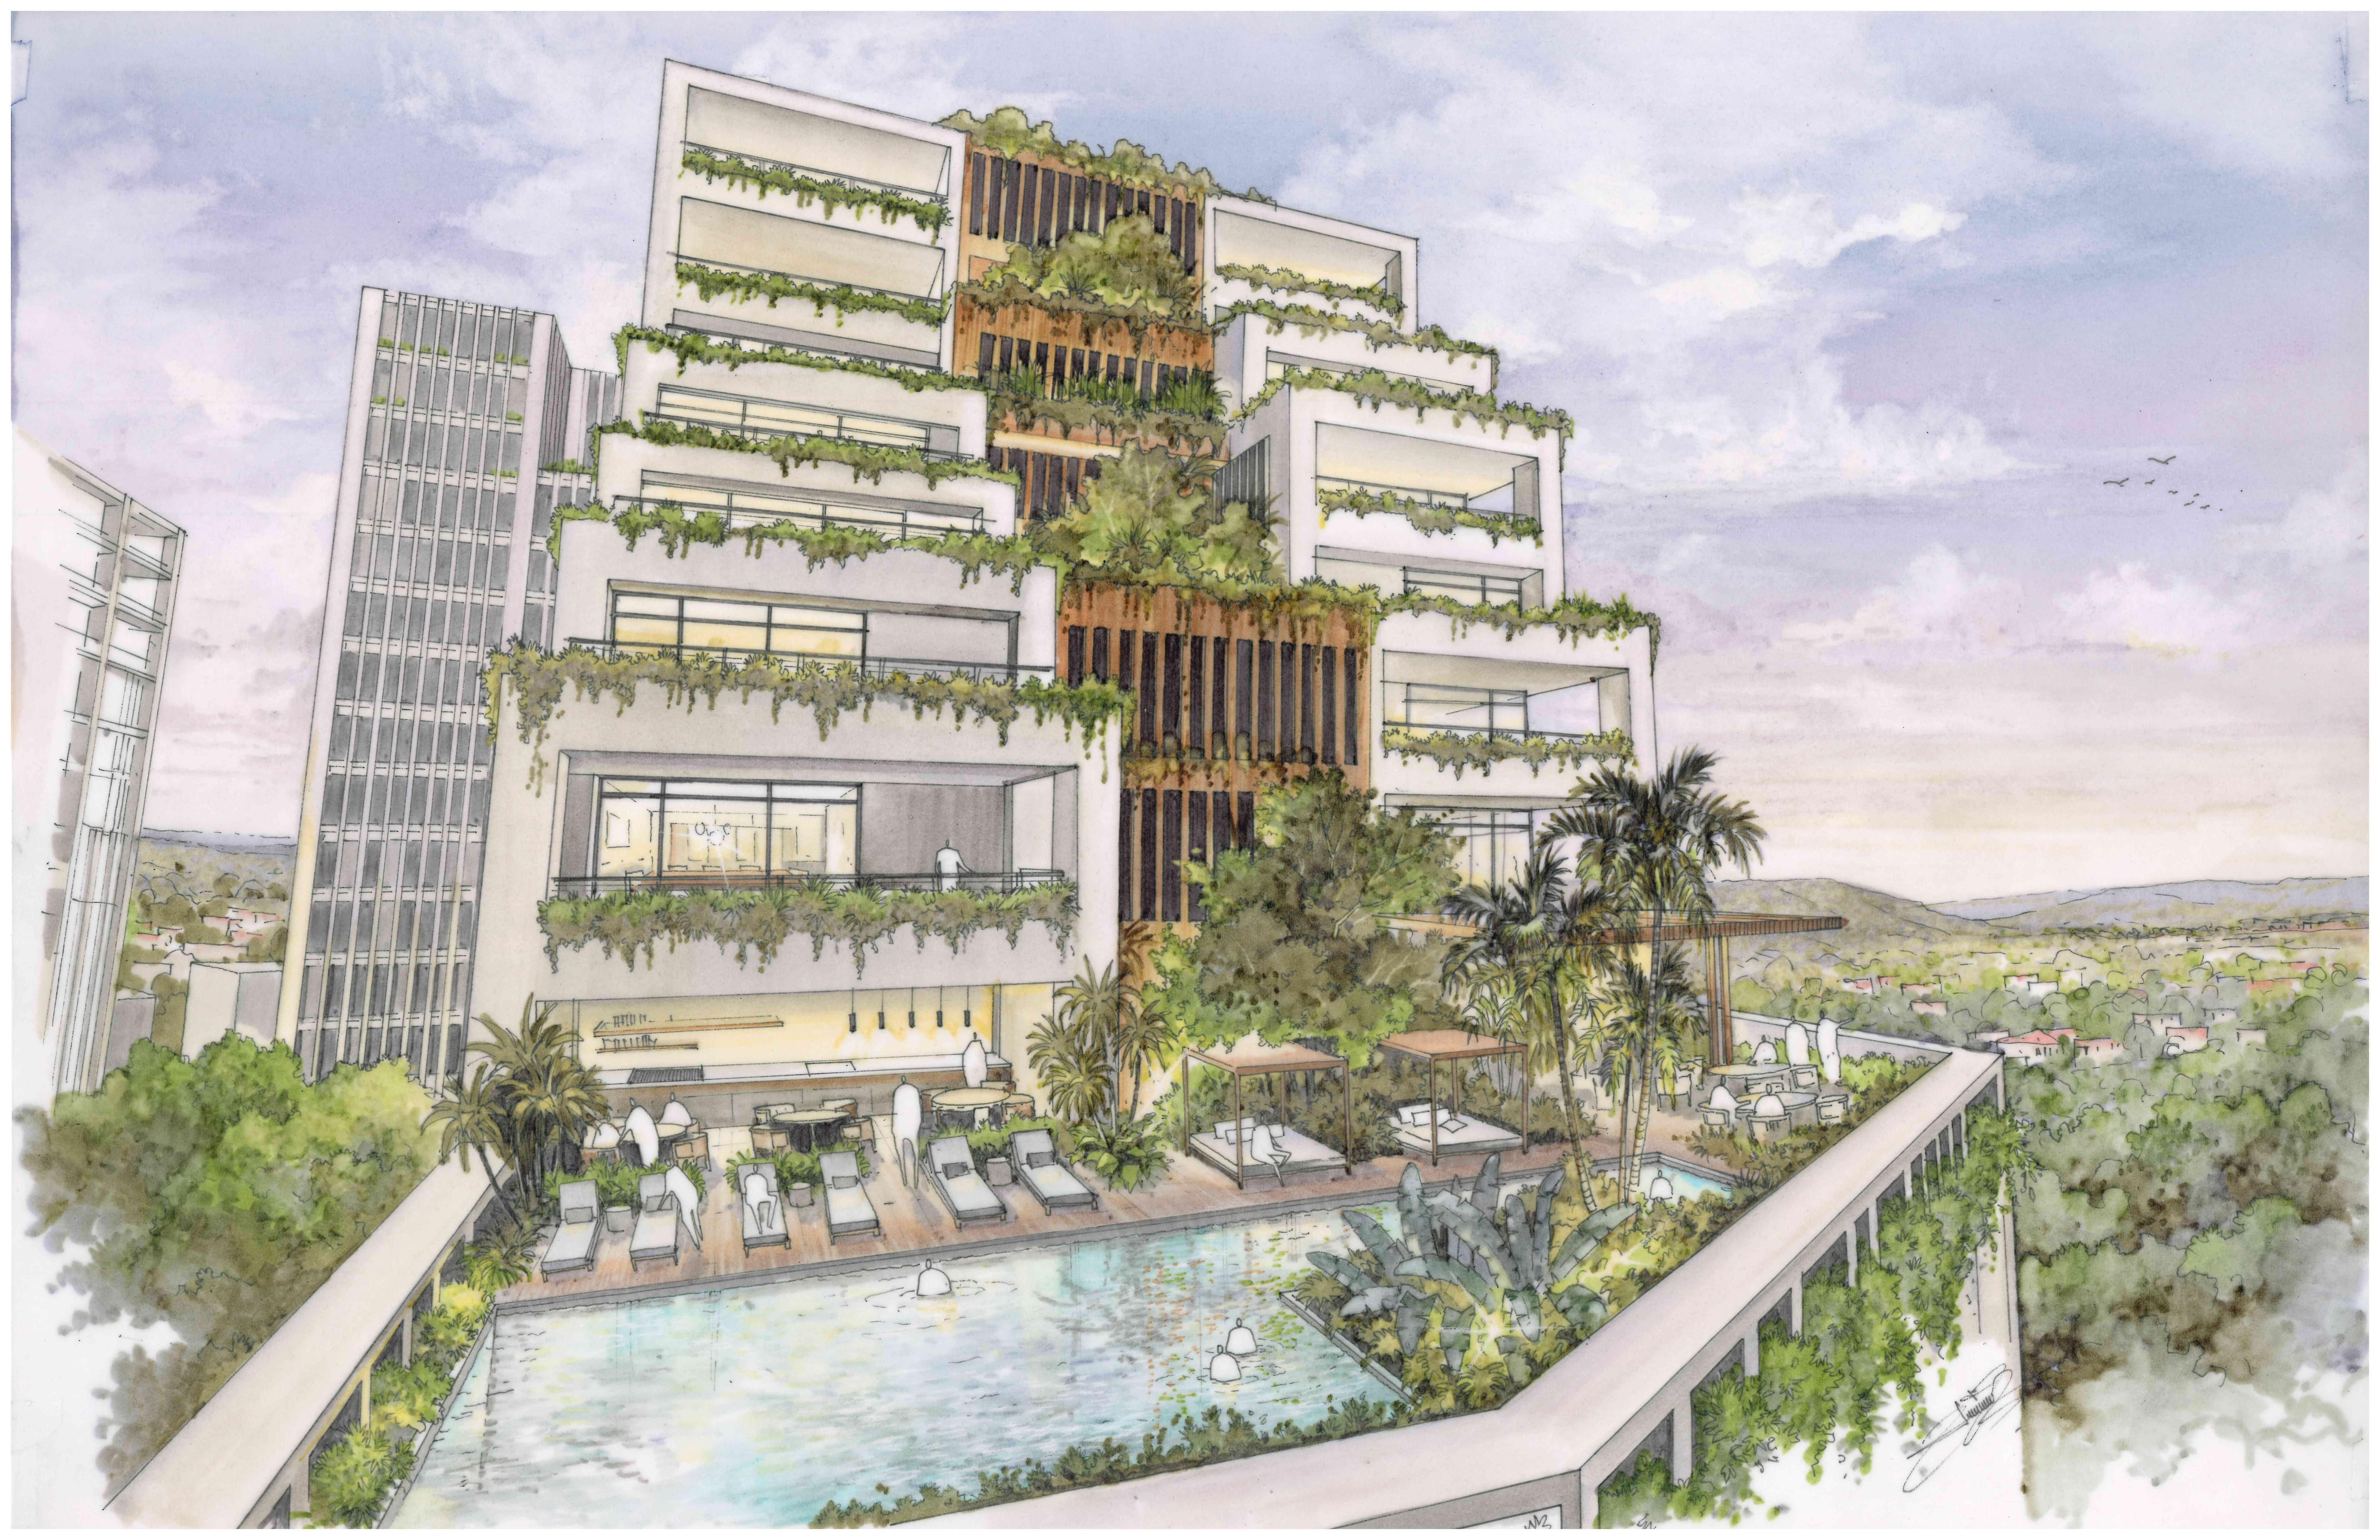 Imagen de cómo se verán las torres residenciales del proyecto, con mucho verde incorporado.